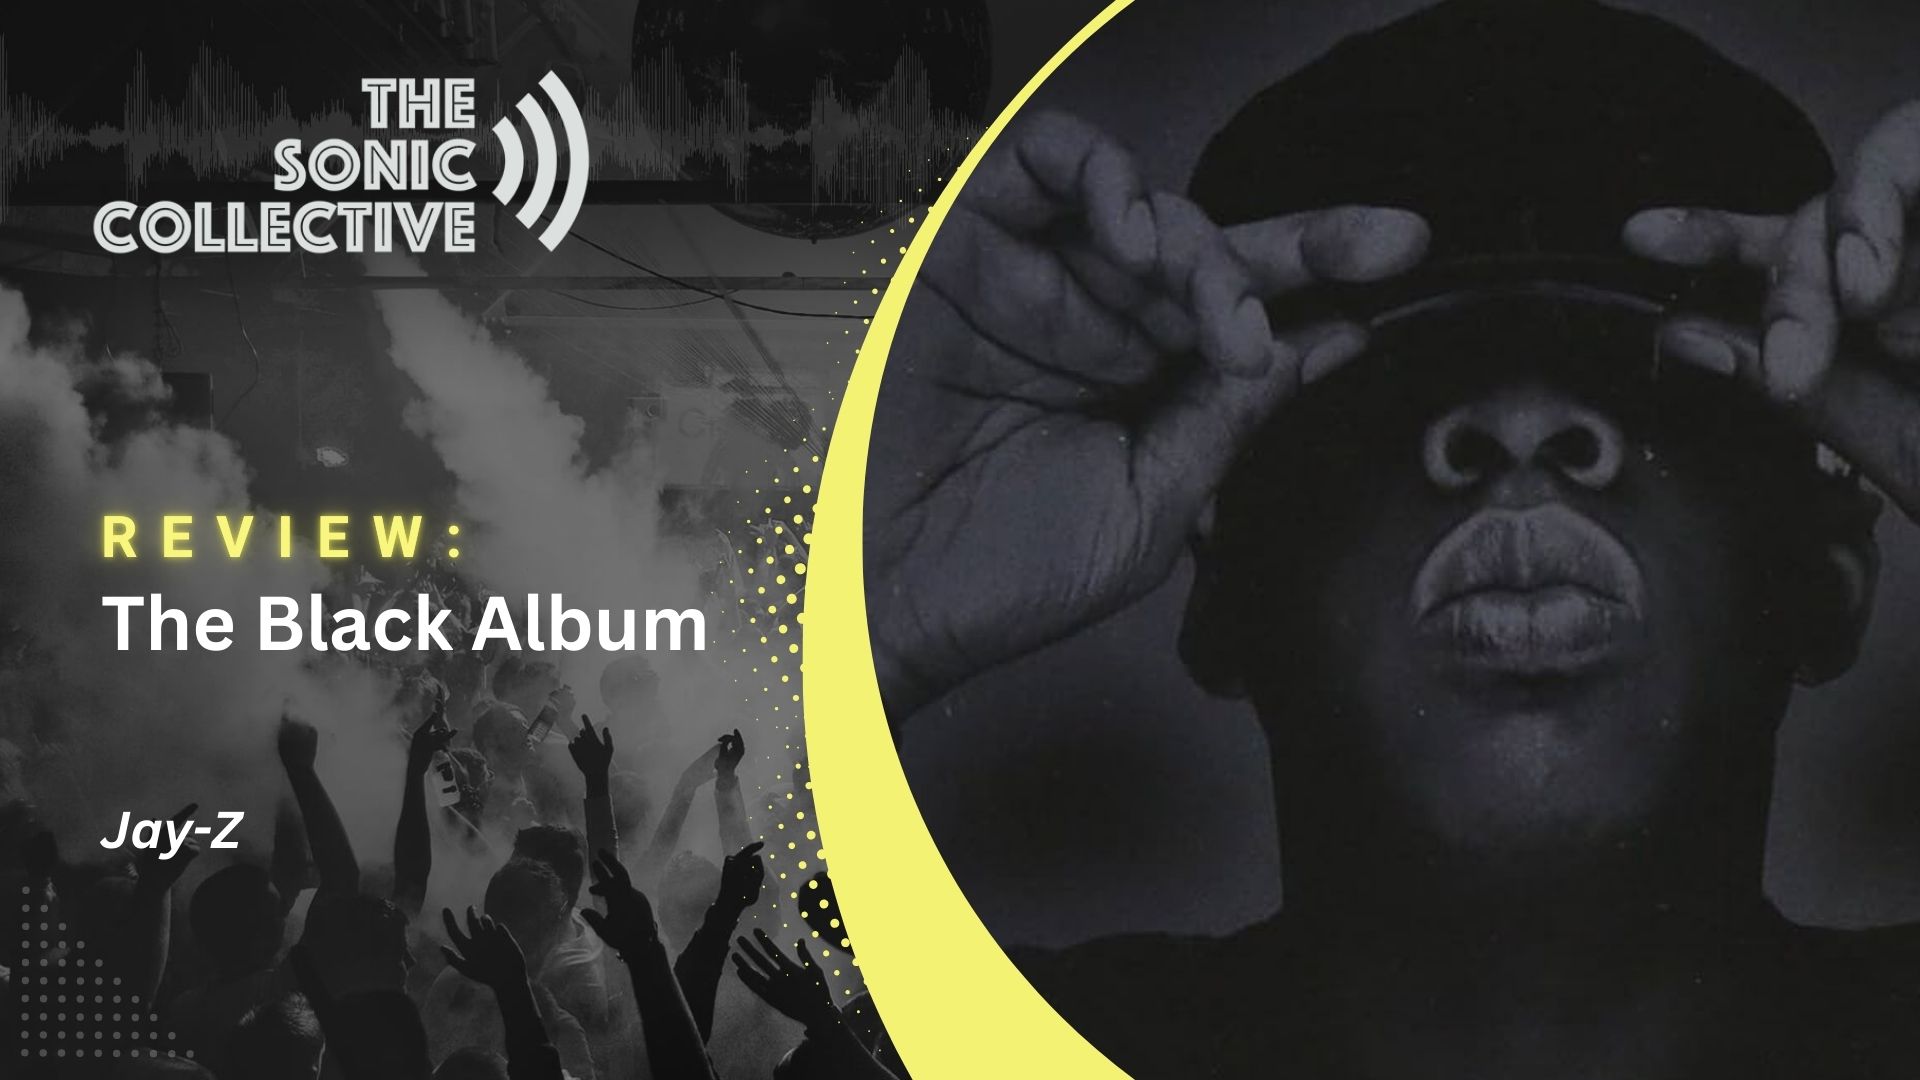 Jay-Z's The Black Album